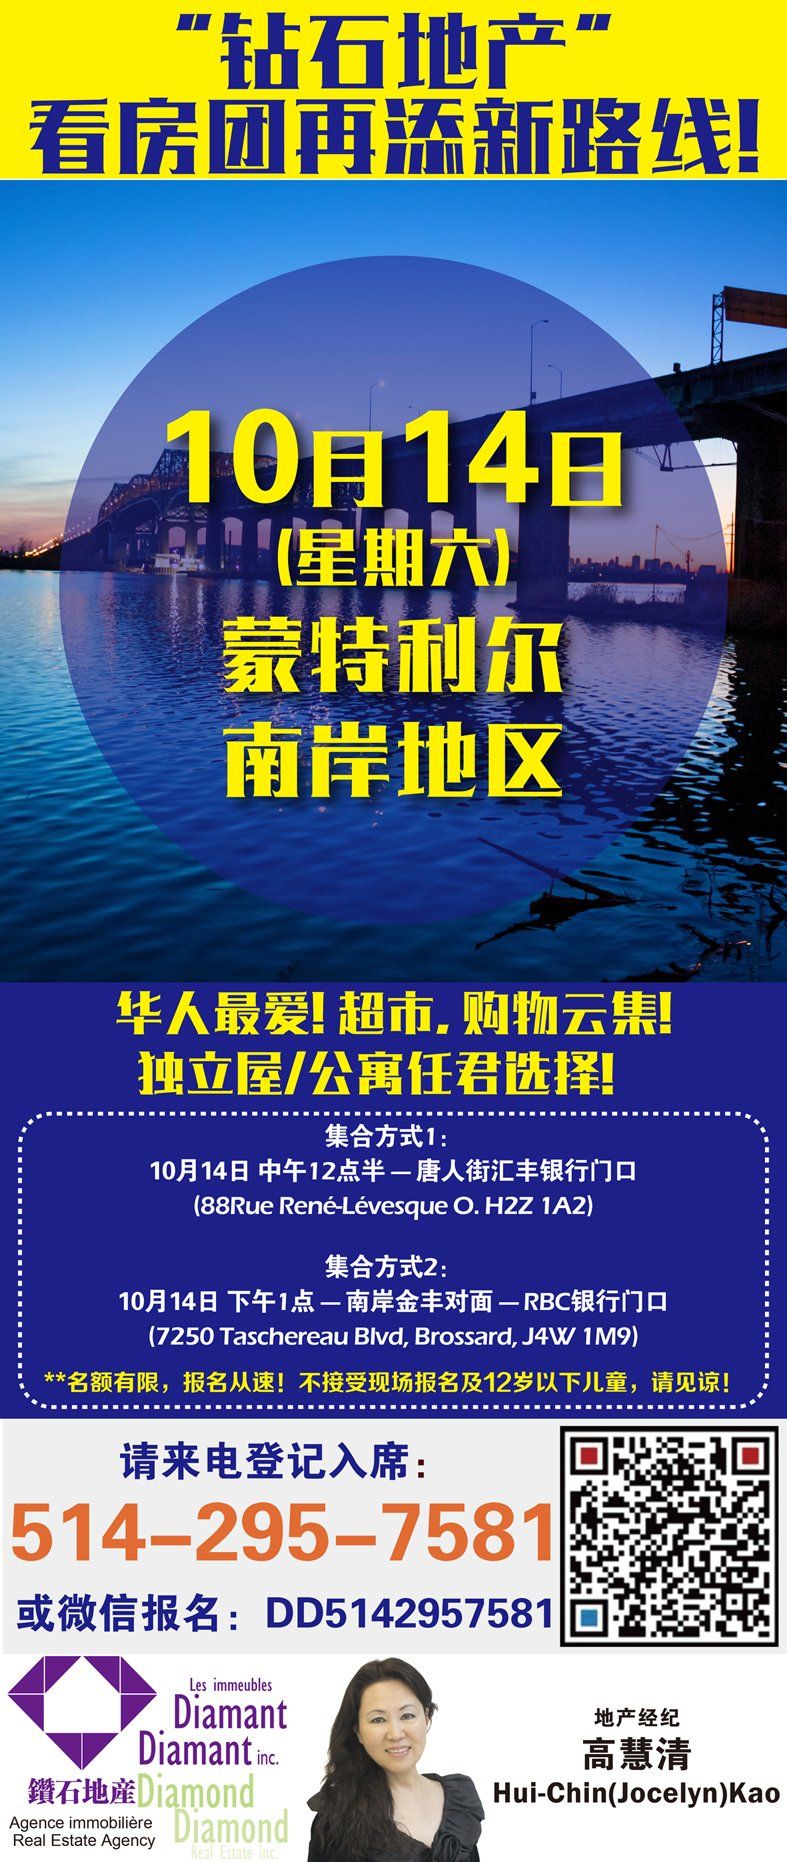 WeChat Image_20171006124330.jpg